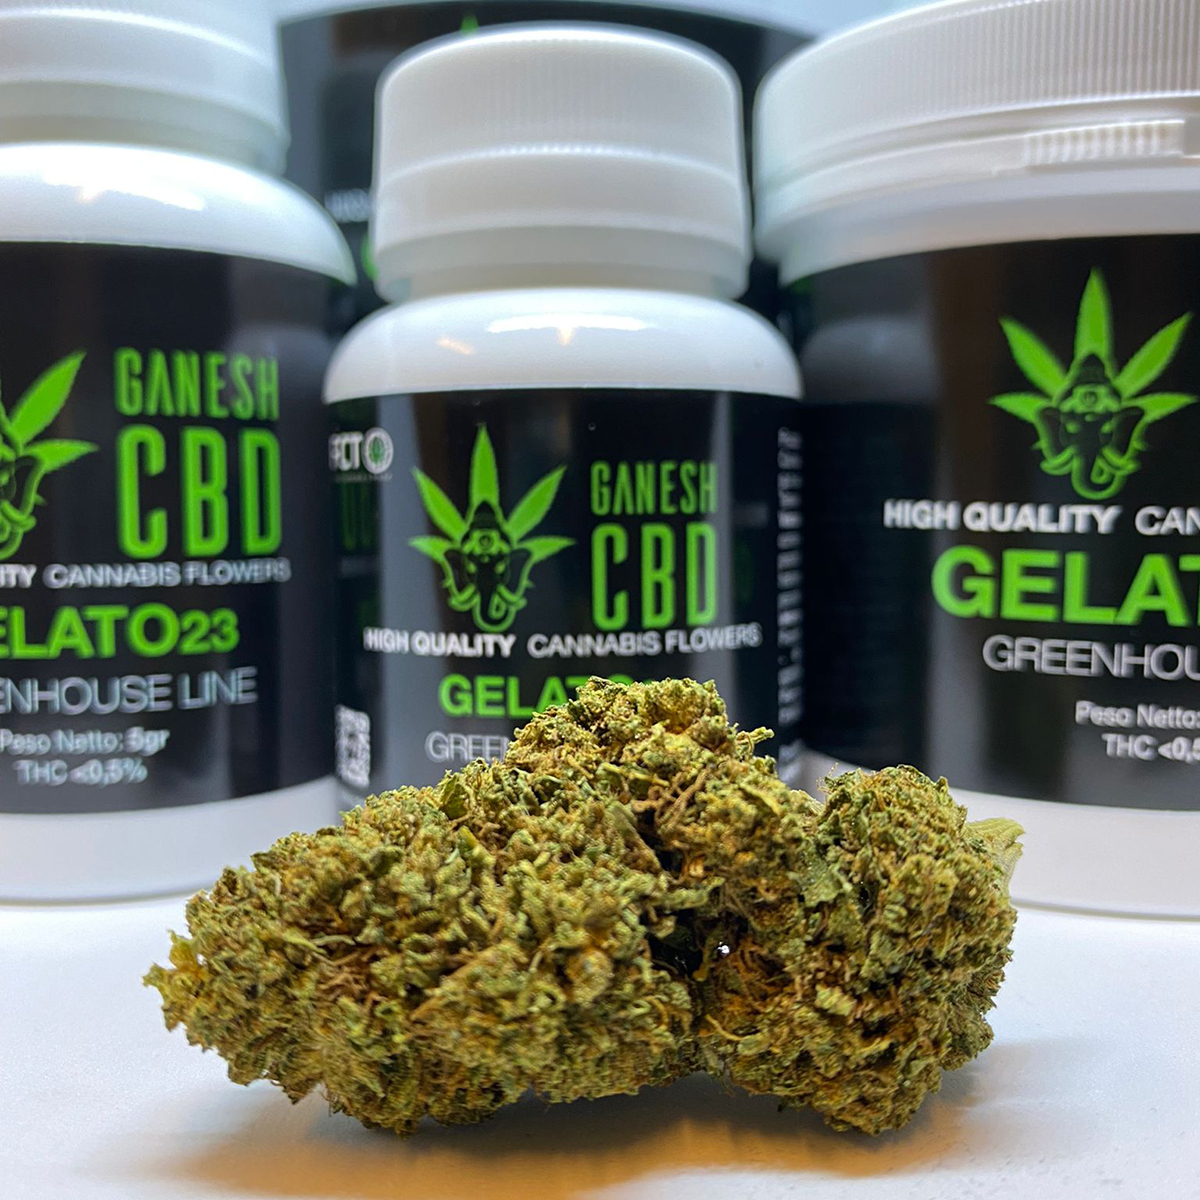 gelato23 ganeshcbd cannabis legale